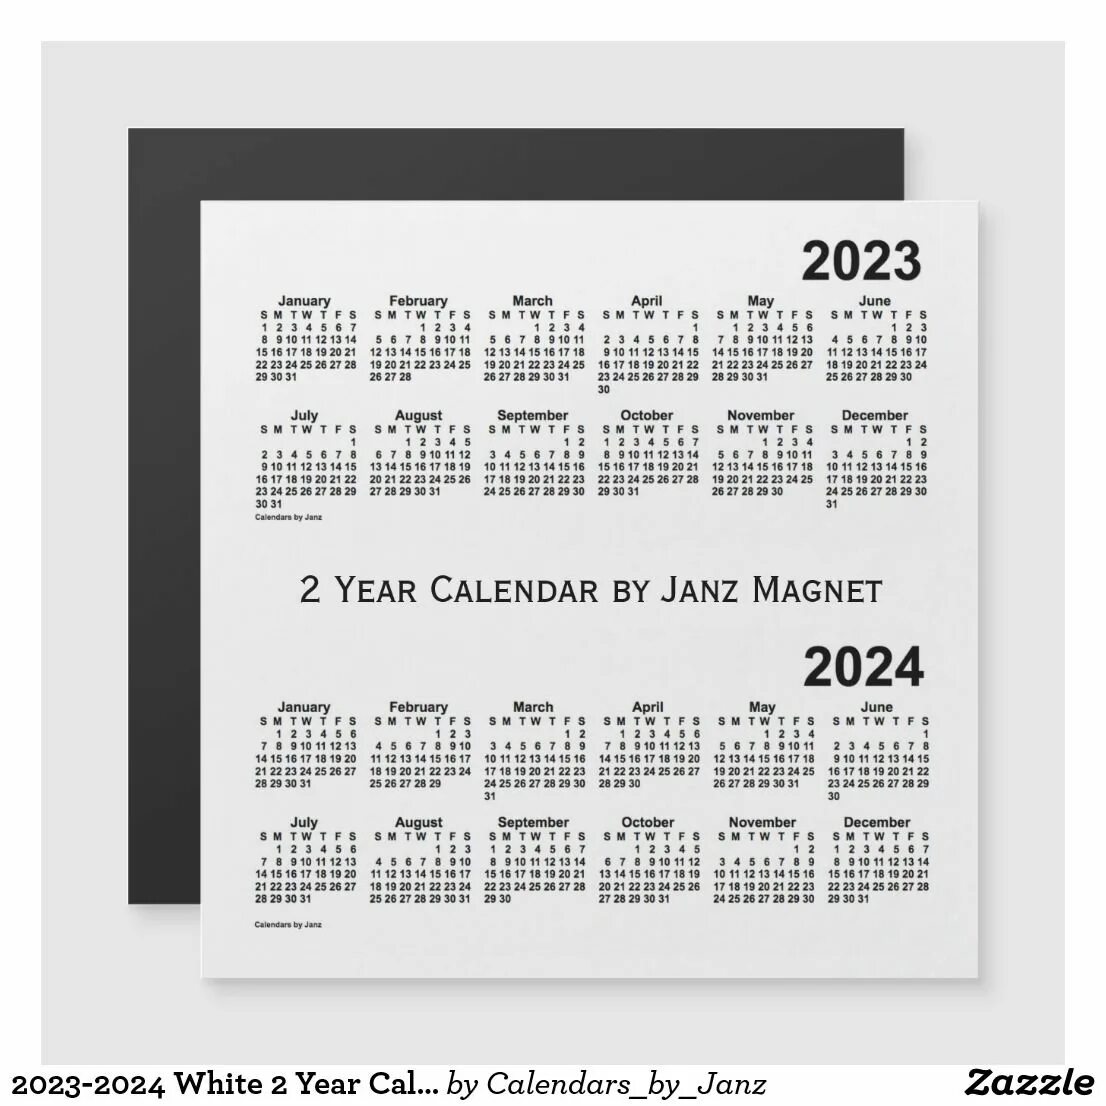 Февраль 2024 почему 29 дней. Календарь 2024-2025. Календарь на февраль 2024 года. Календарь на 2025 год. Февраль 2025 календарь.